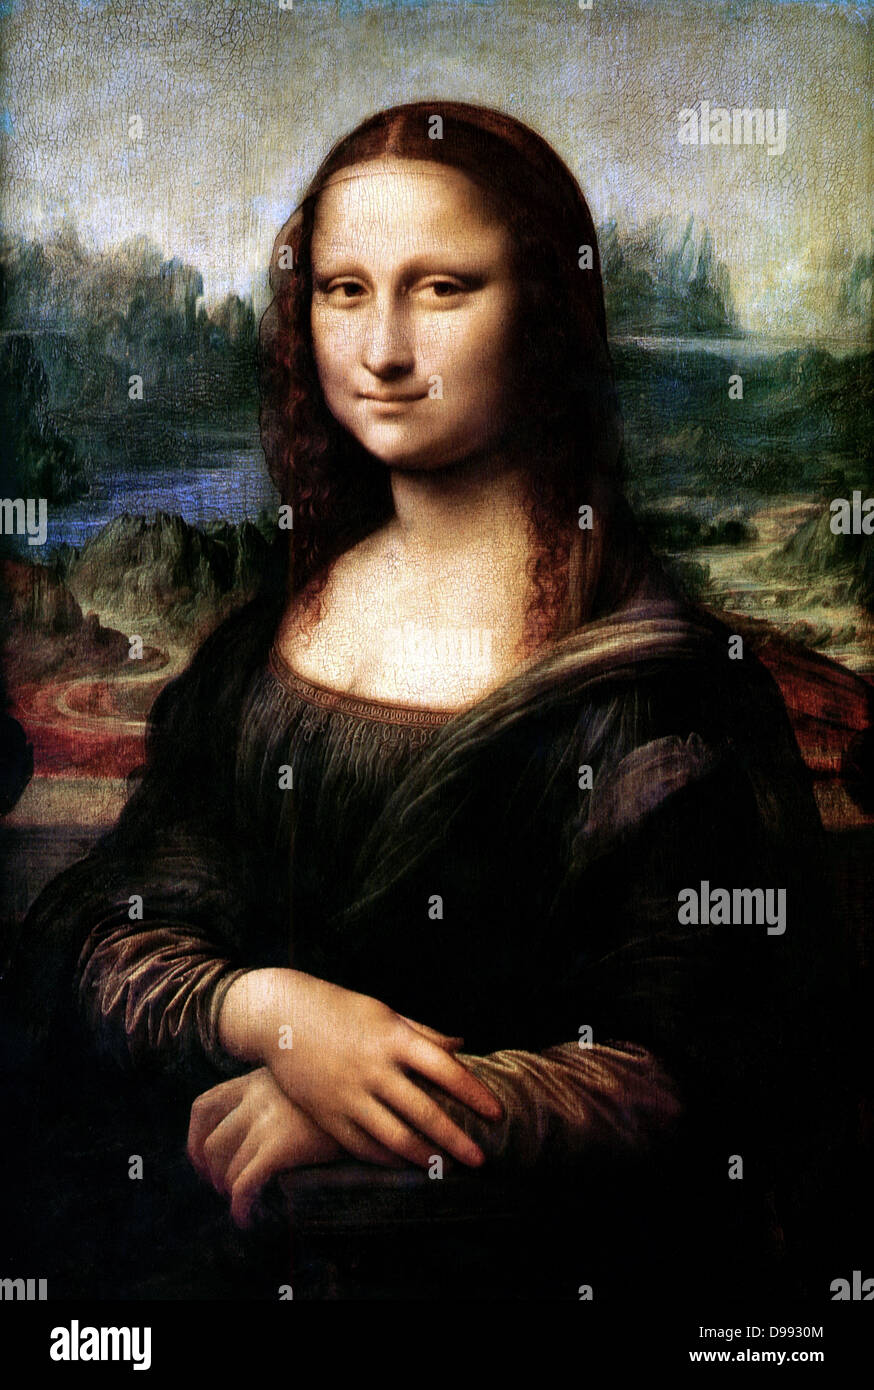 Mona Lisa' également appelé 'La Joconde' ou 'La Joconde', c1503-1506. Huile sur bois. Leonardo da Vinci (1452-1519). Portrait de Lisa Gheradini, épouse de Francesco del Gioconda un marchand de soie florentin. Banque D'Images